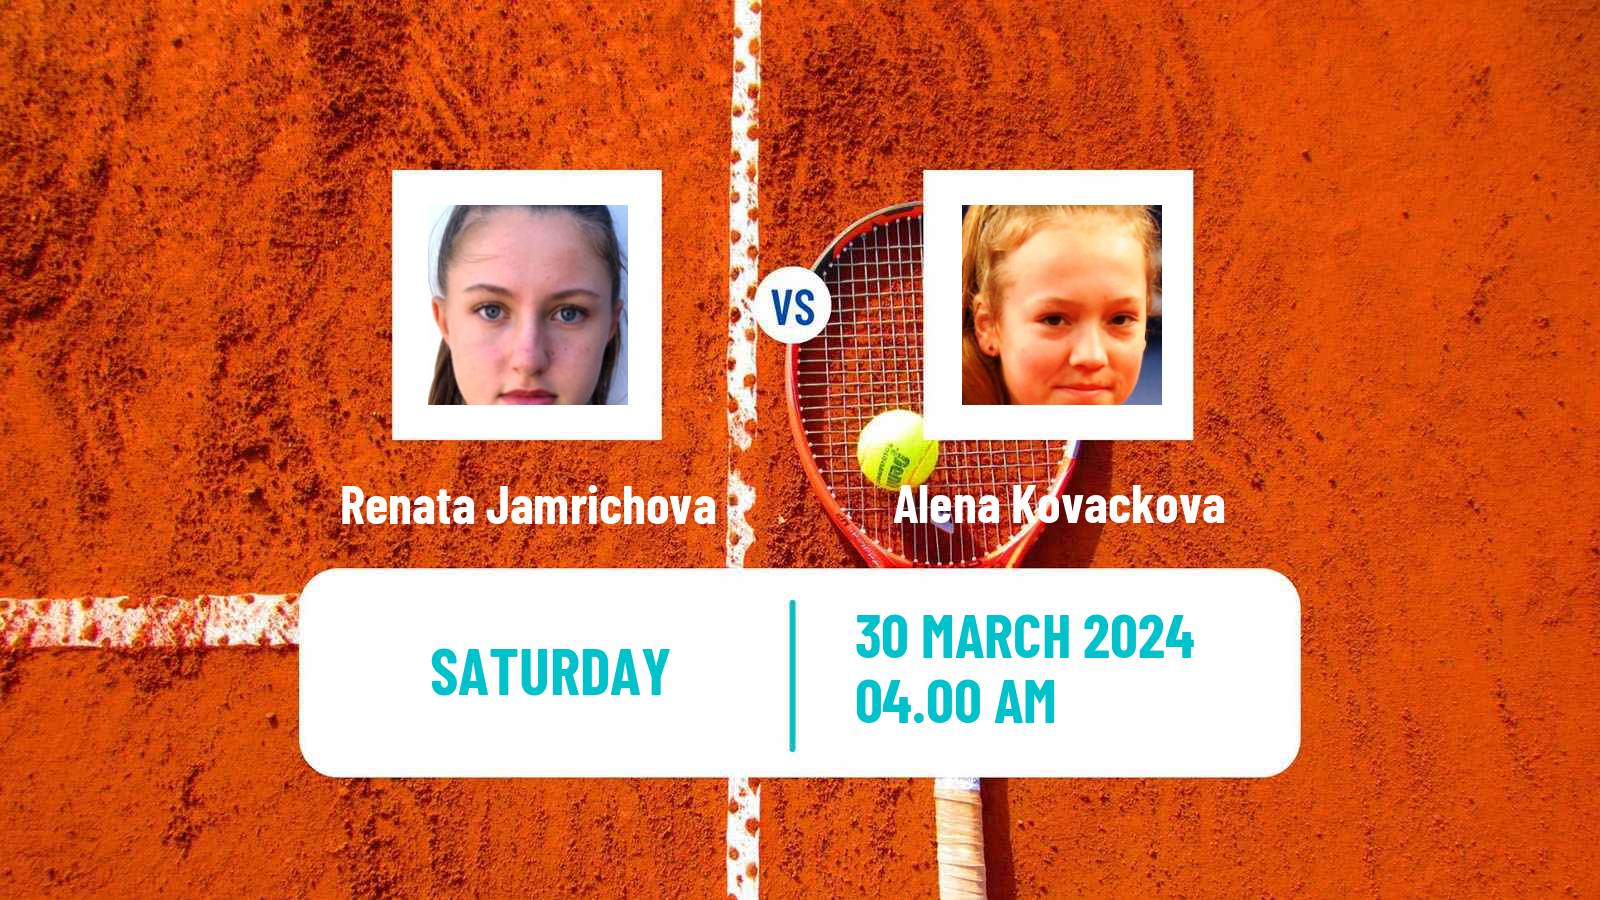 Tennis ITF W15 Sharm Elsheikh 8 Women Renata Jamrichova - Alena Kovackova